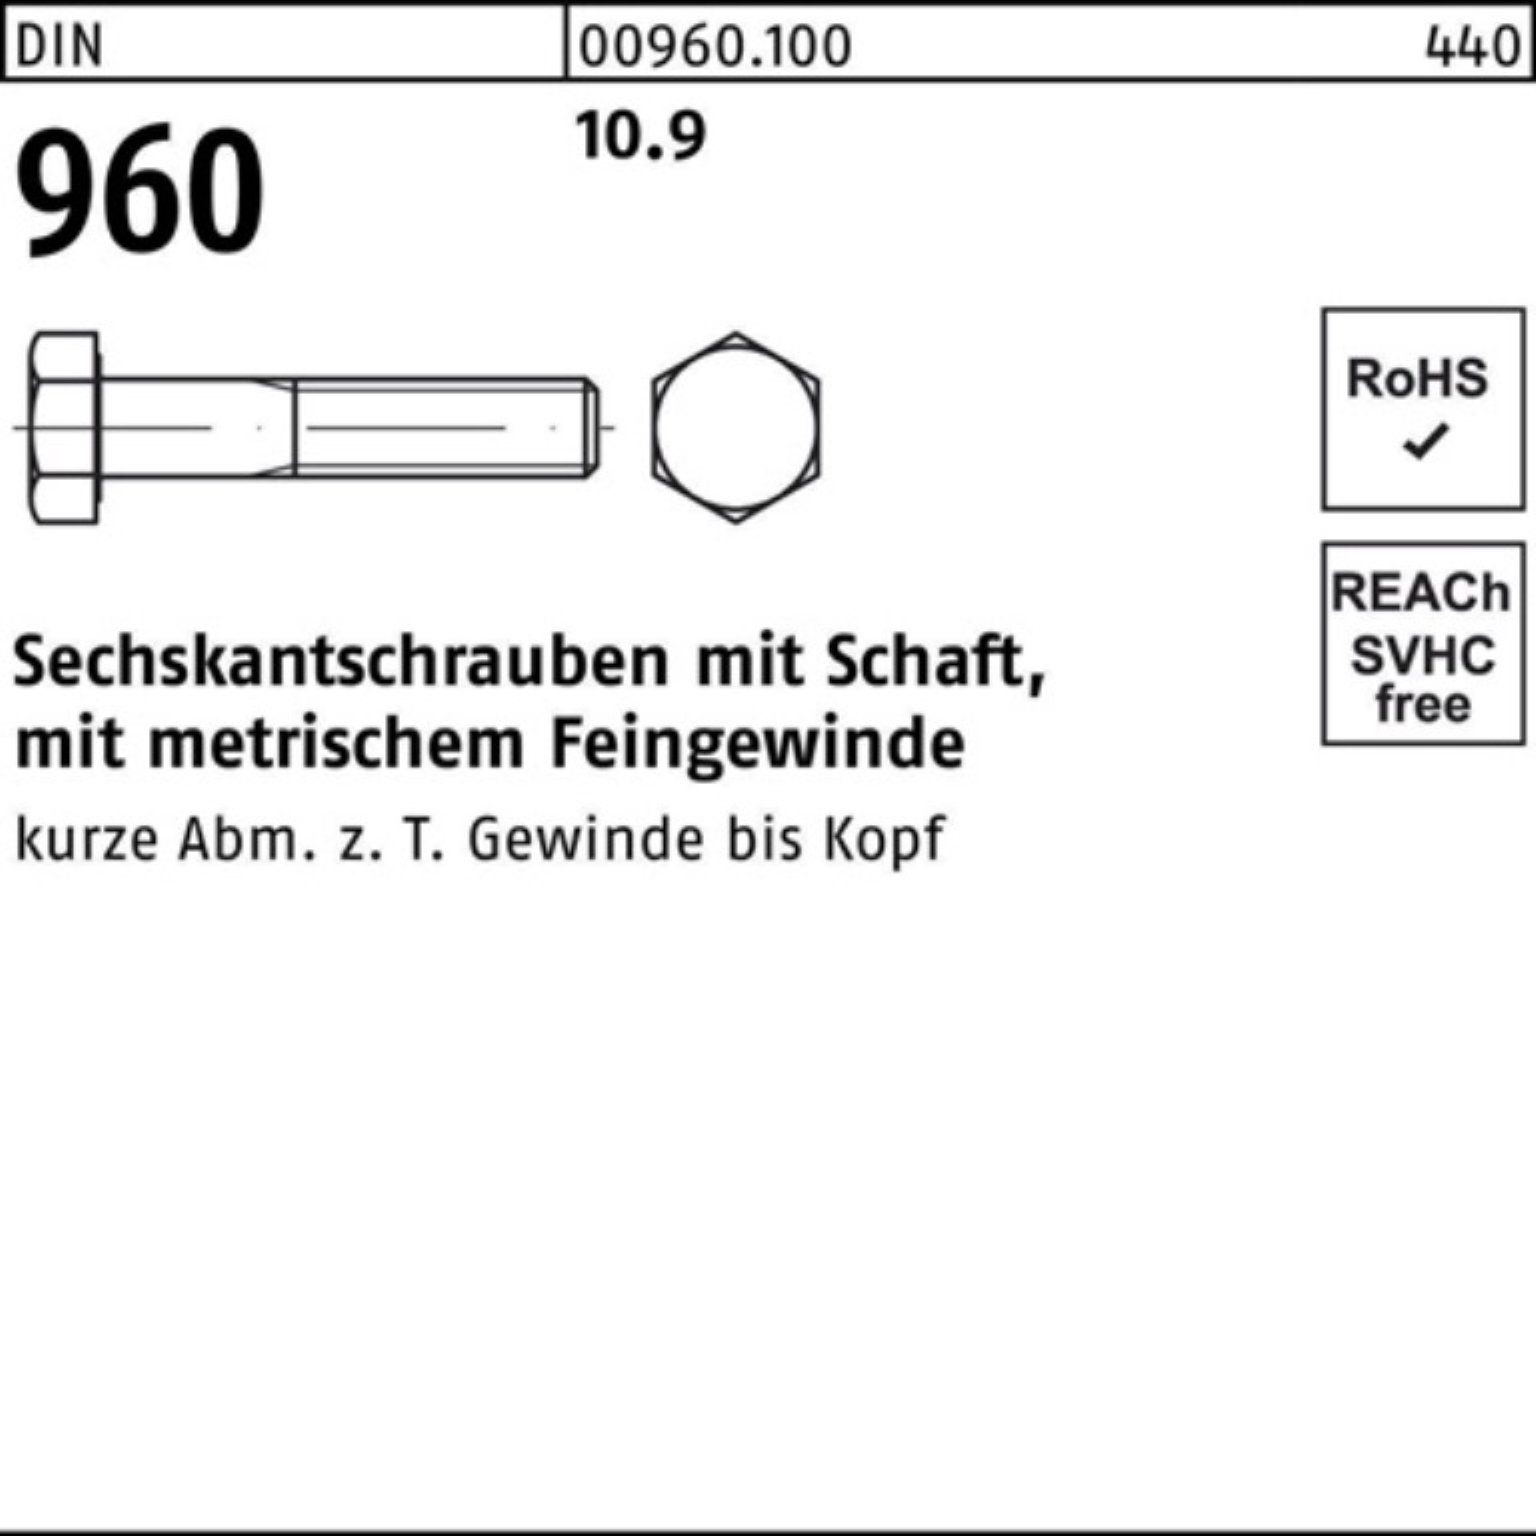 Reyher Sechskantschraube 100er 10.9 DIN Schaft M12x1,25x100 Pack 960 50 Sechskantschraube Stüc